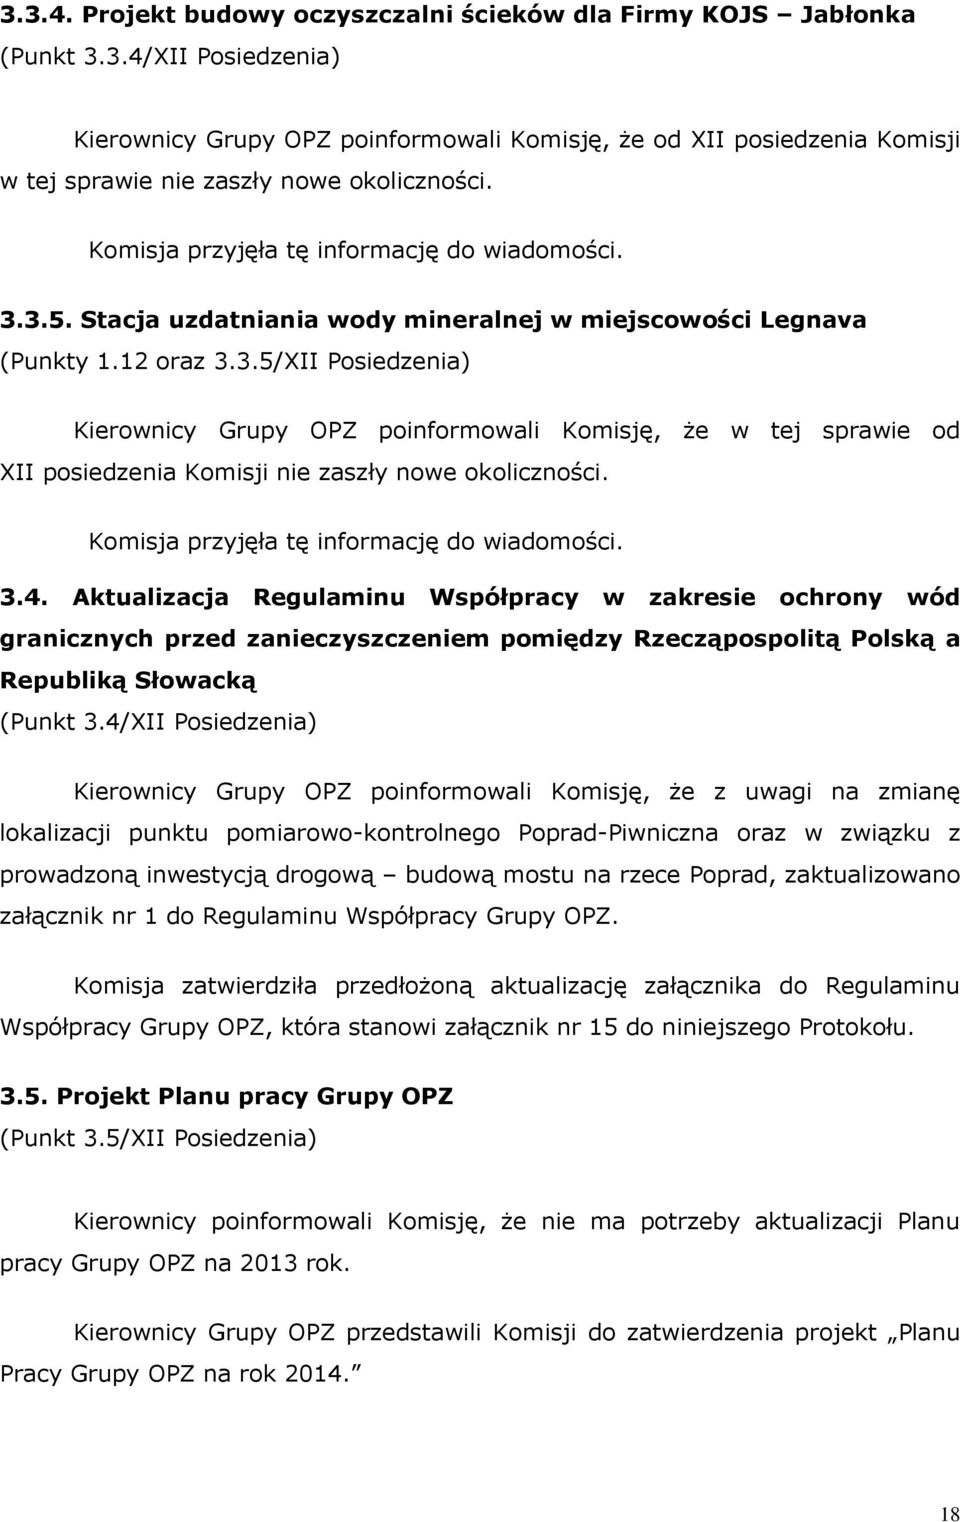 3.4. Aktualizacja Regulaminu Współpracy w zakresie ochrony wód granicznych przed zanieczyszczeniem pomiędzy Rzecząpospolitą Polską a Republiką Słowacką (Punkt 3.